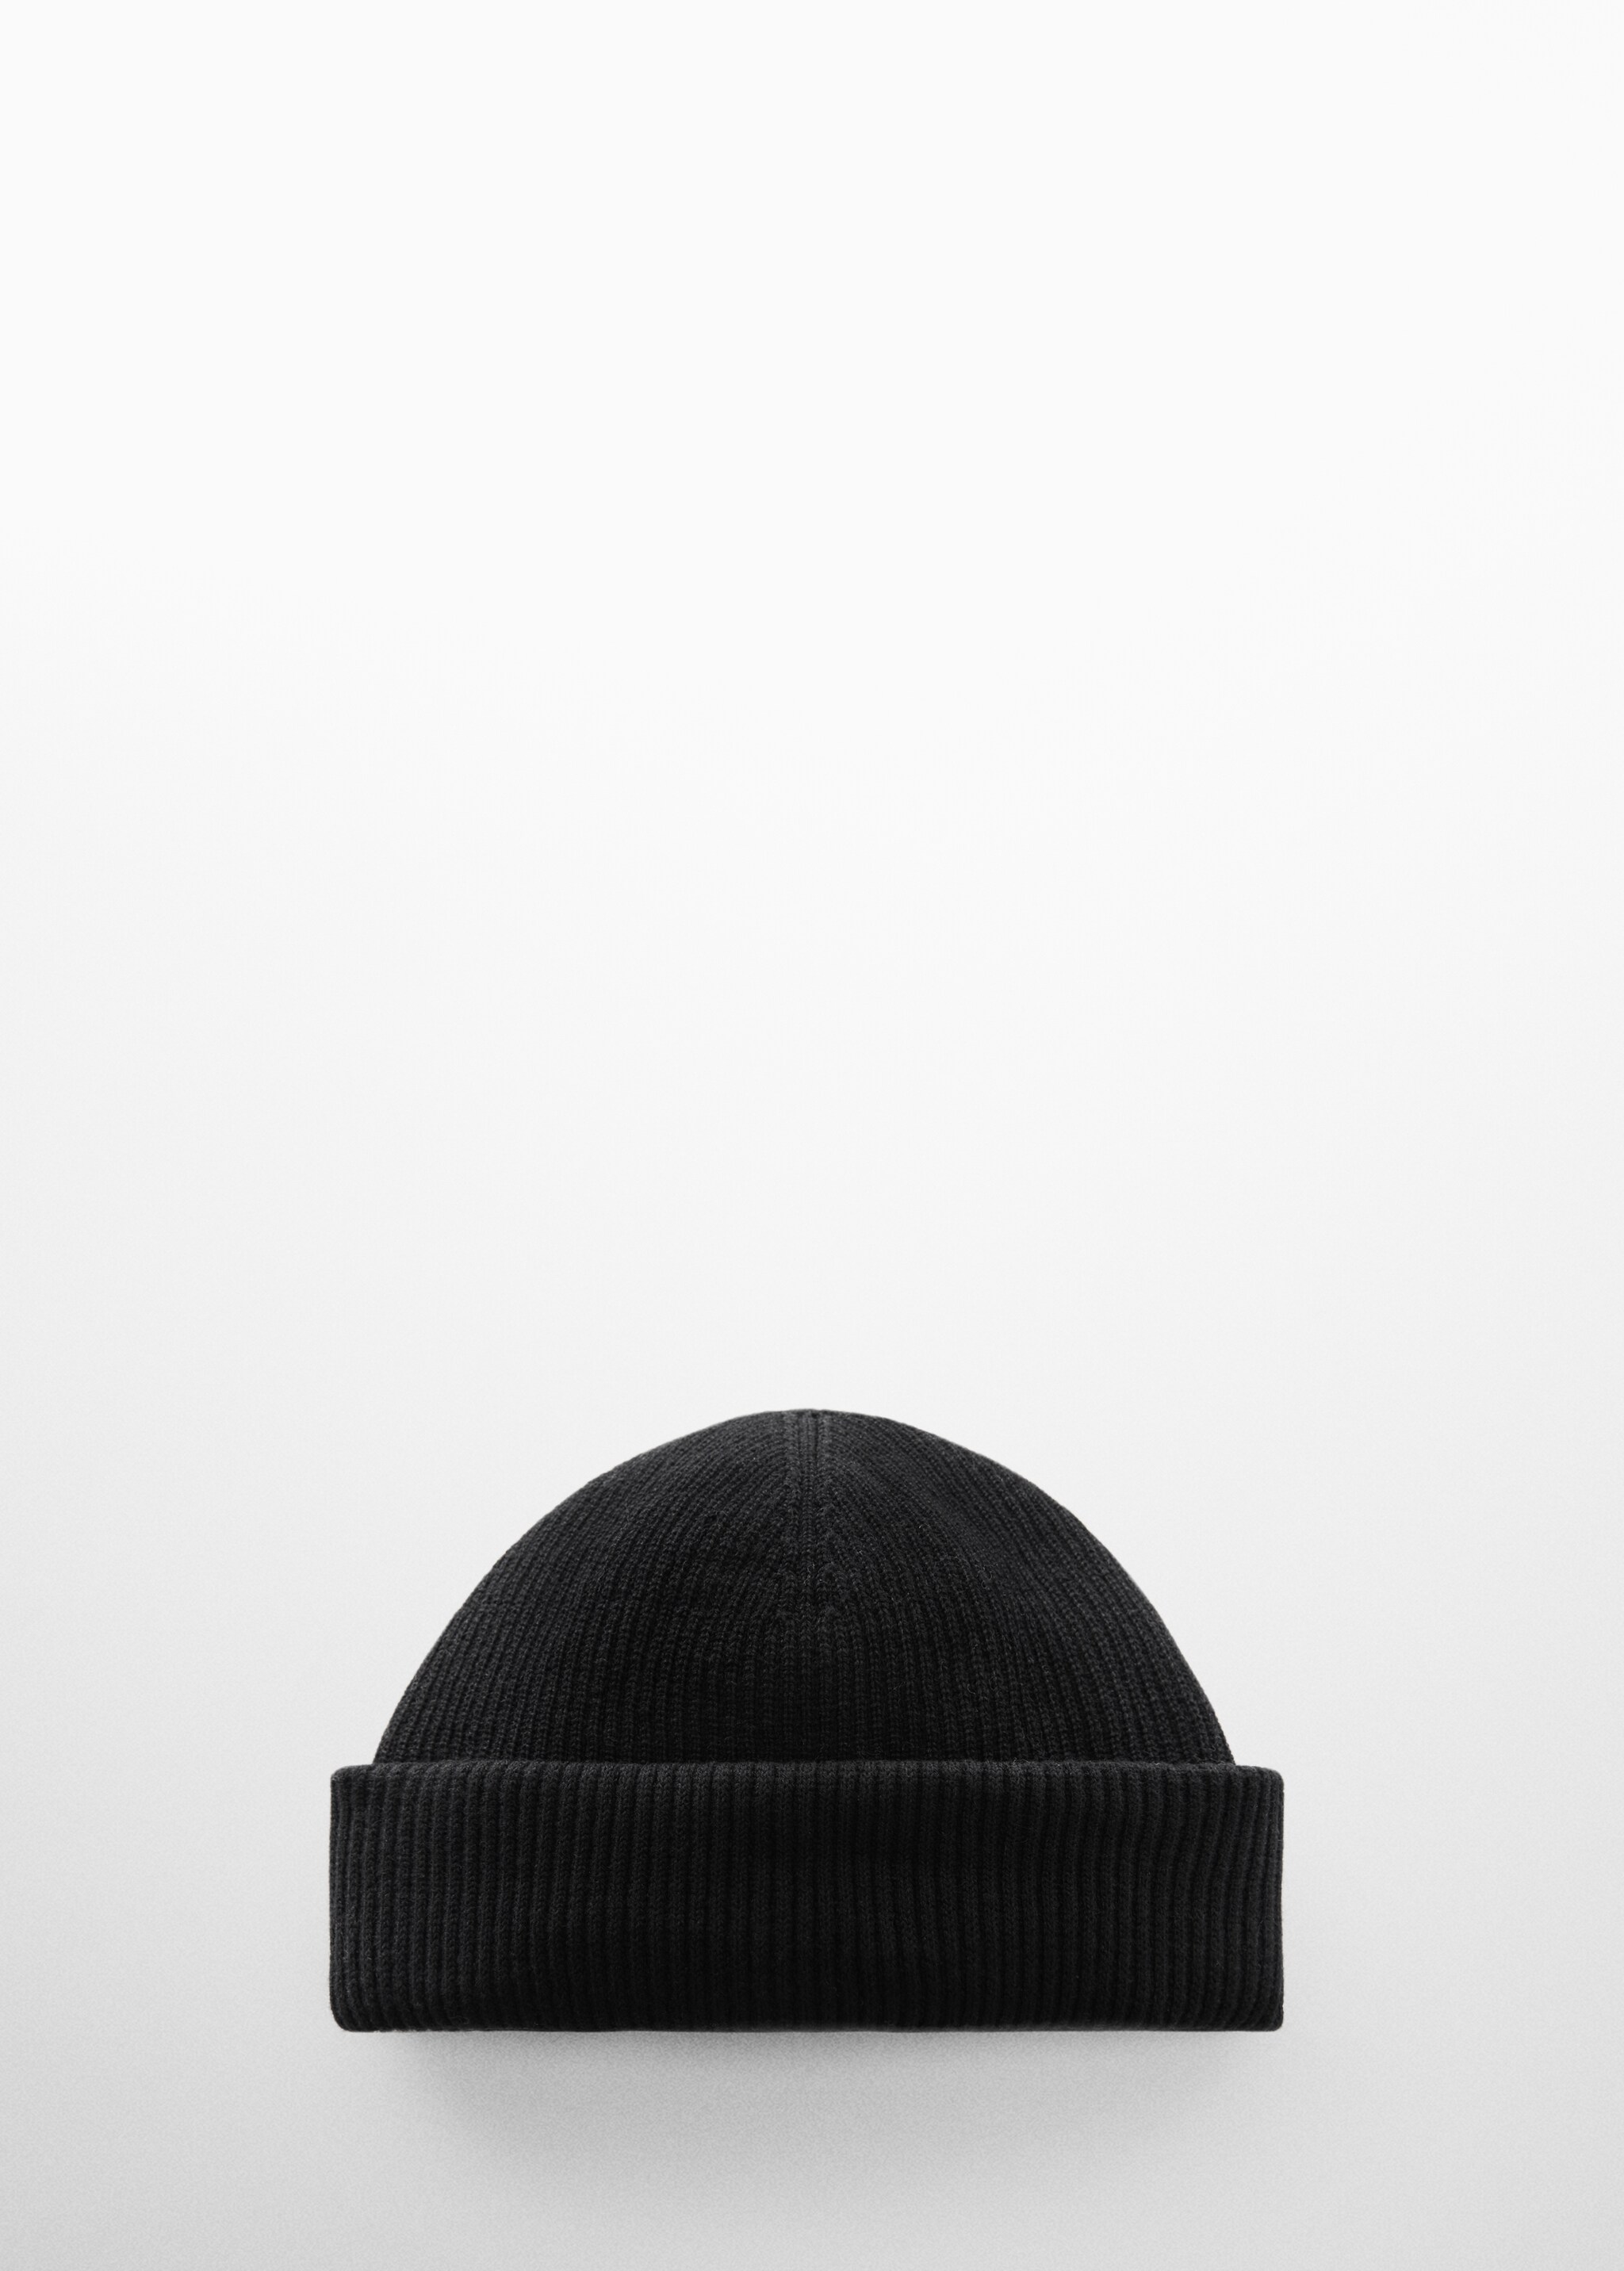 Cappellino corto maglia - Articolo senza modello